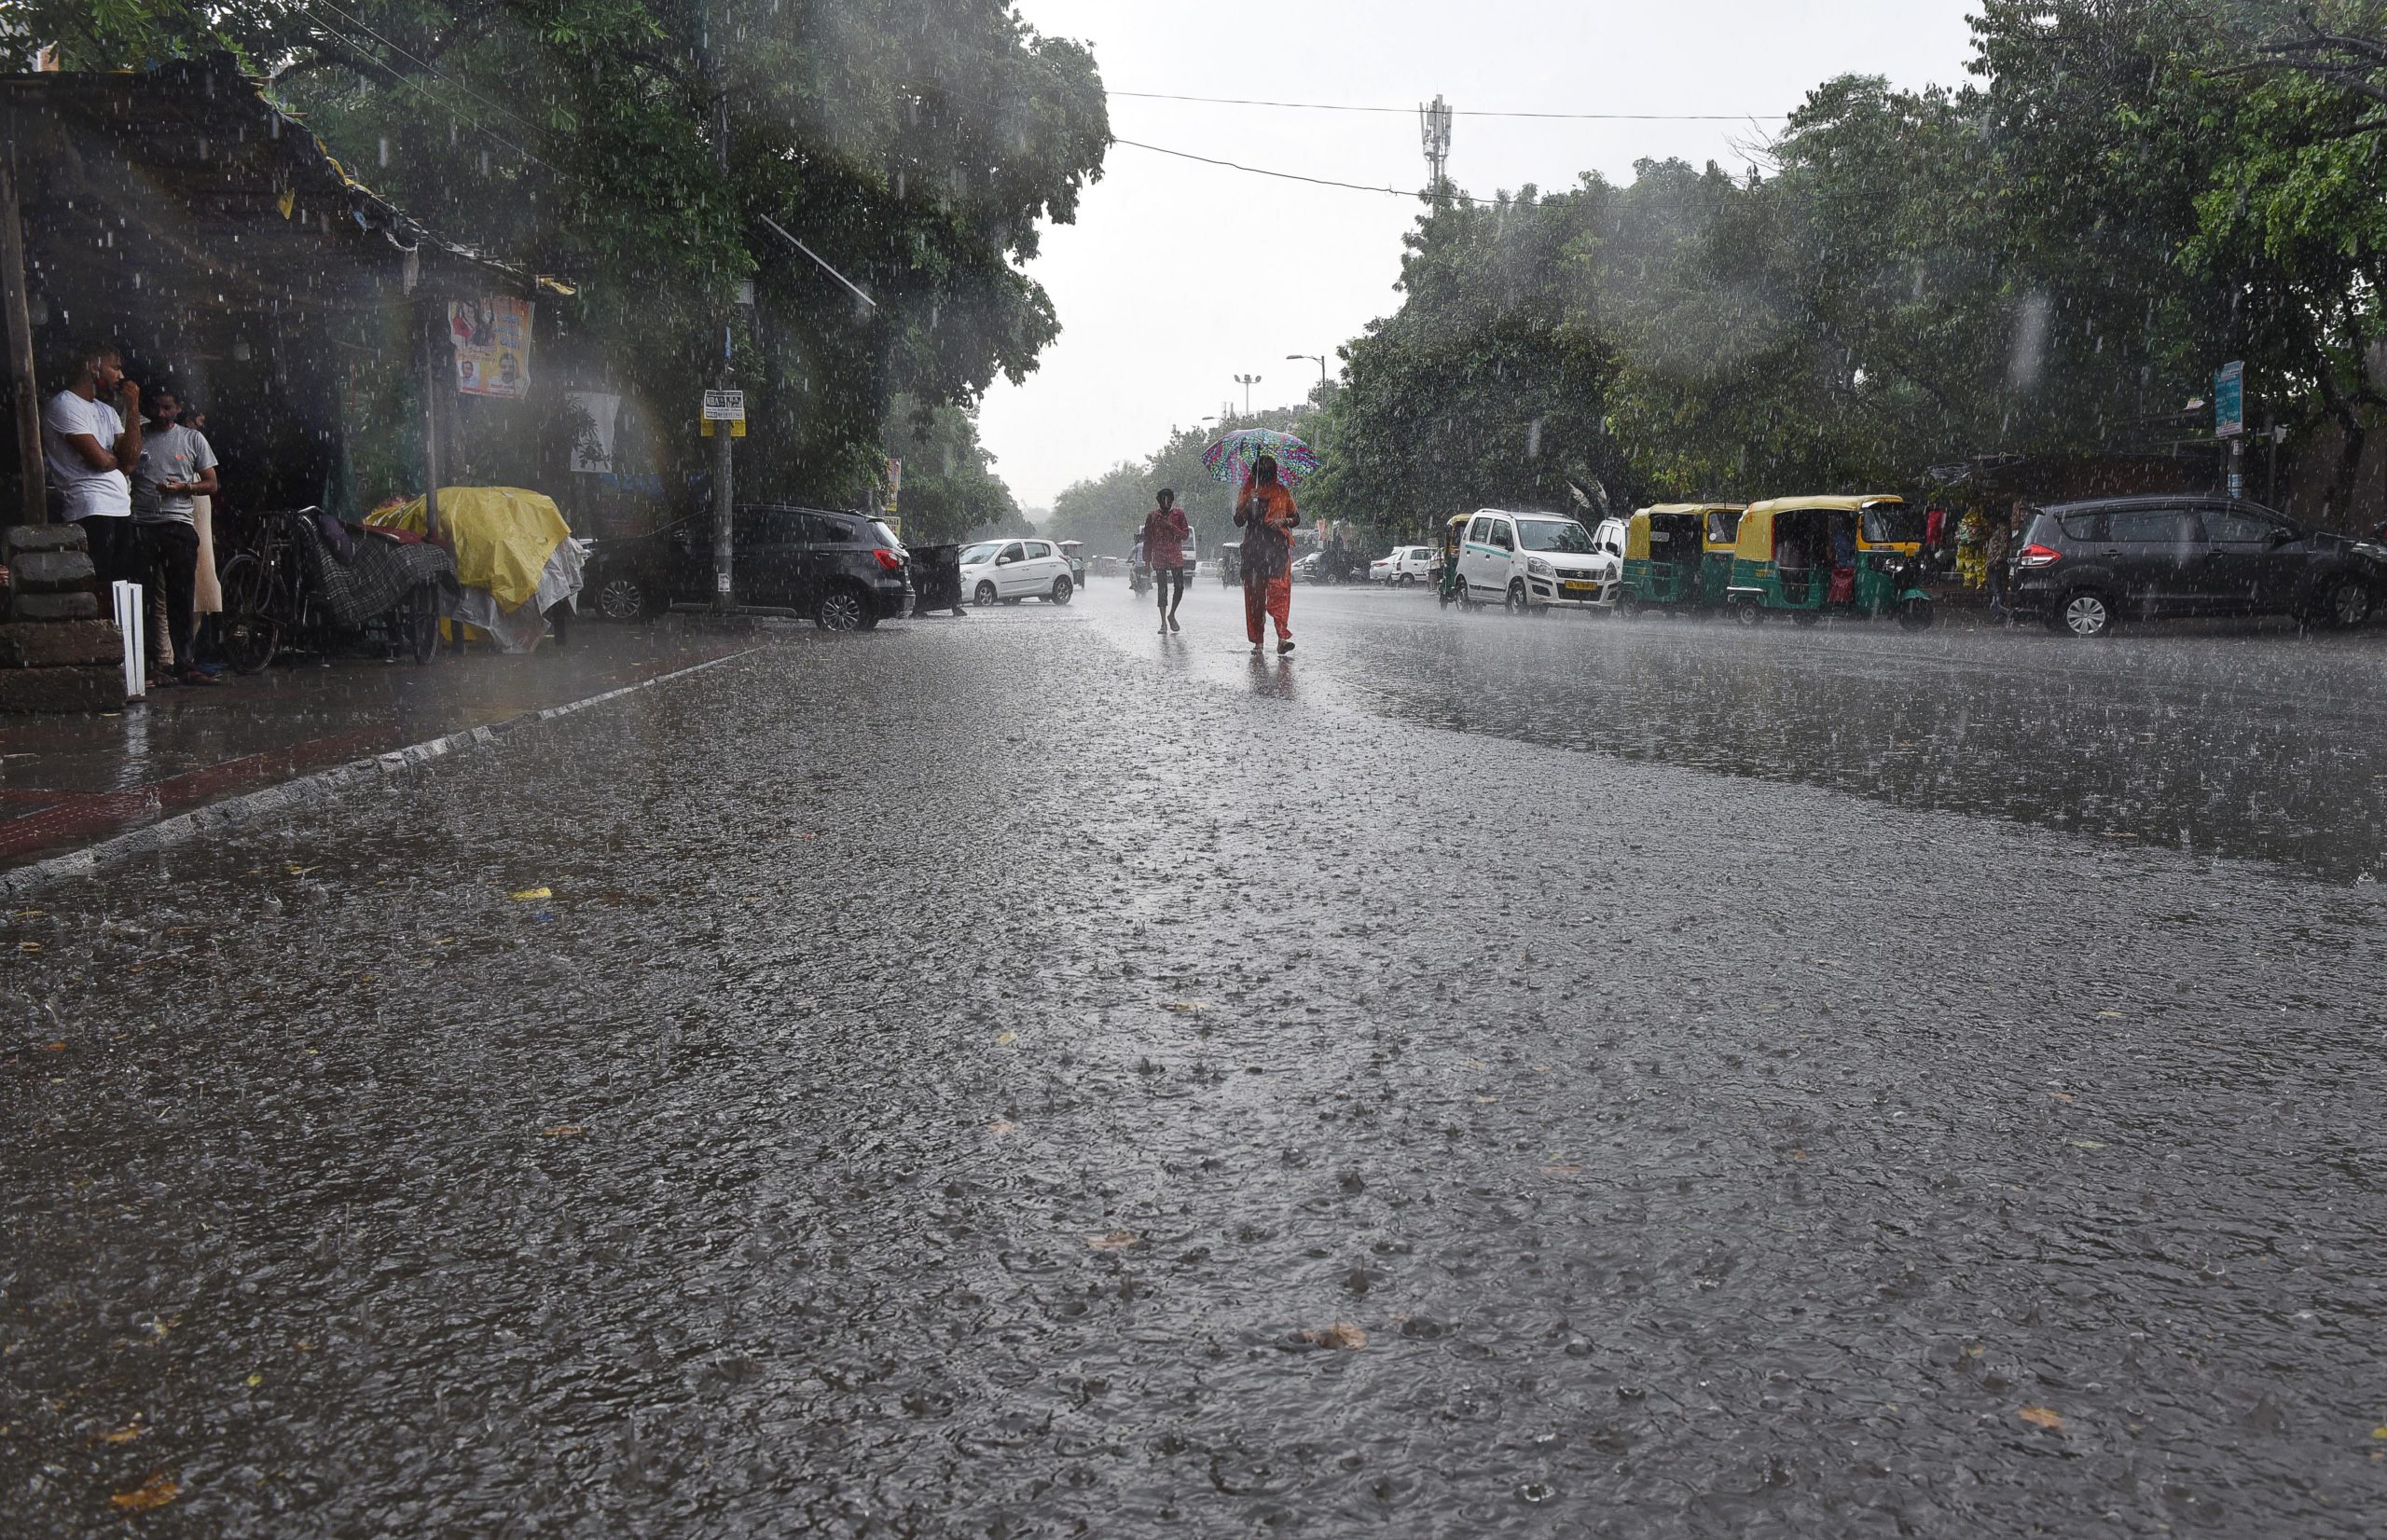 Delhi: Rainfall this season so far highest since 1964; more in store